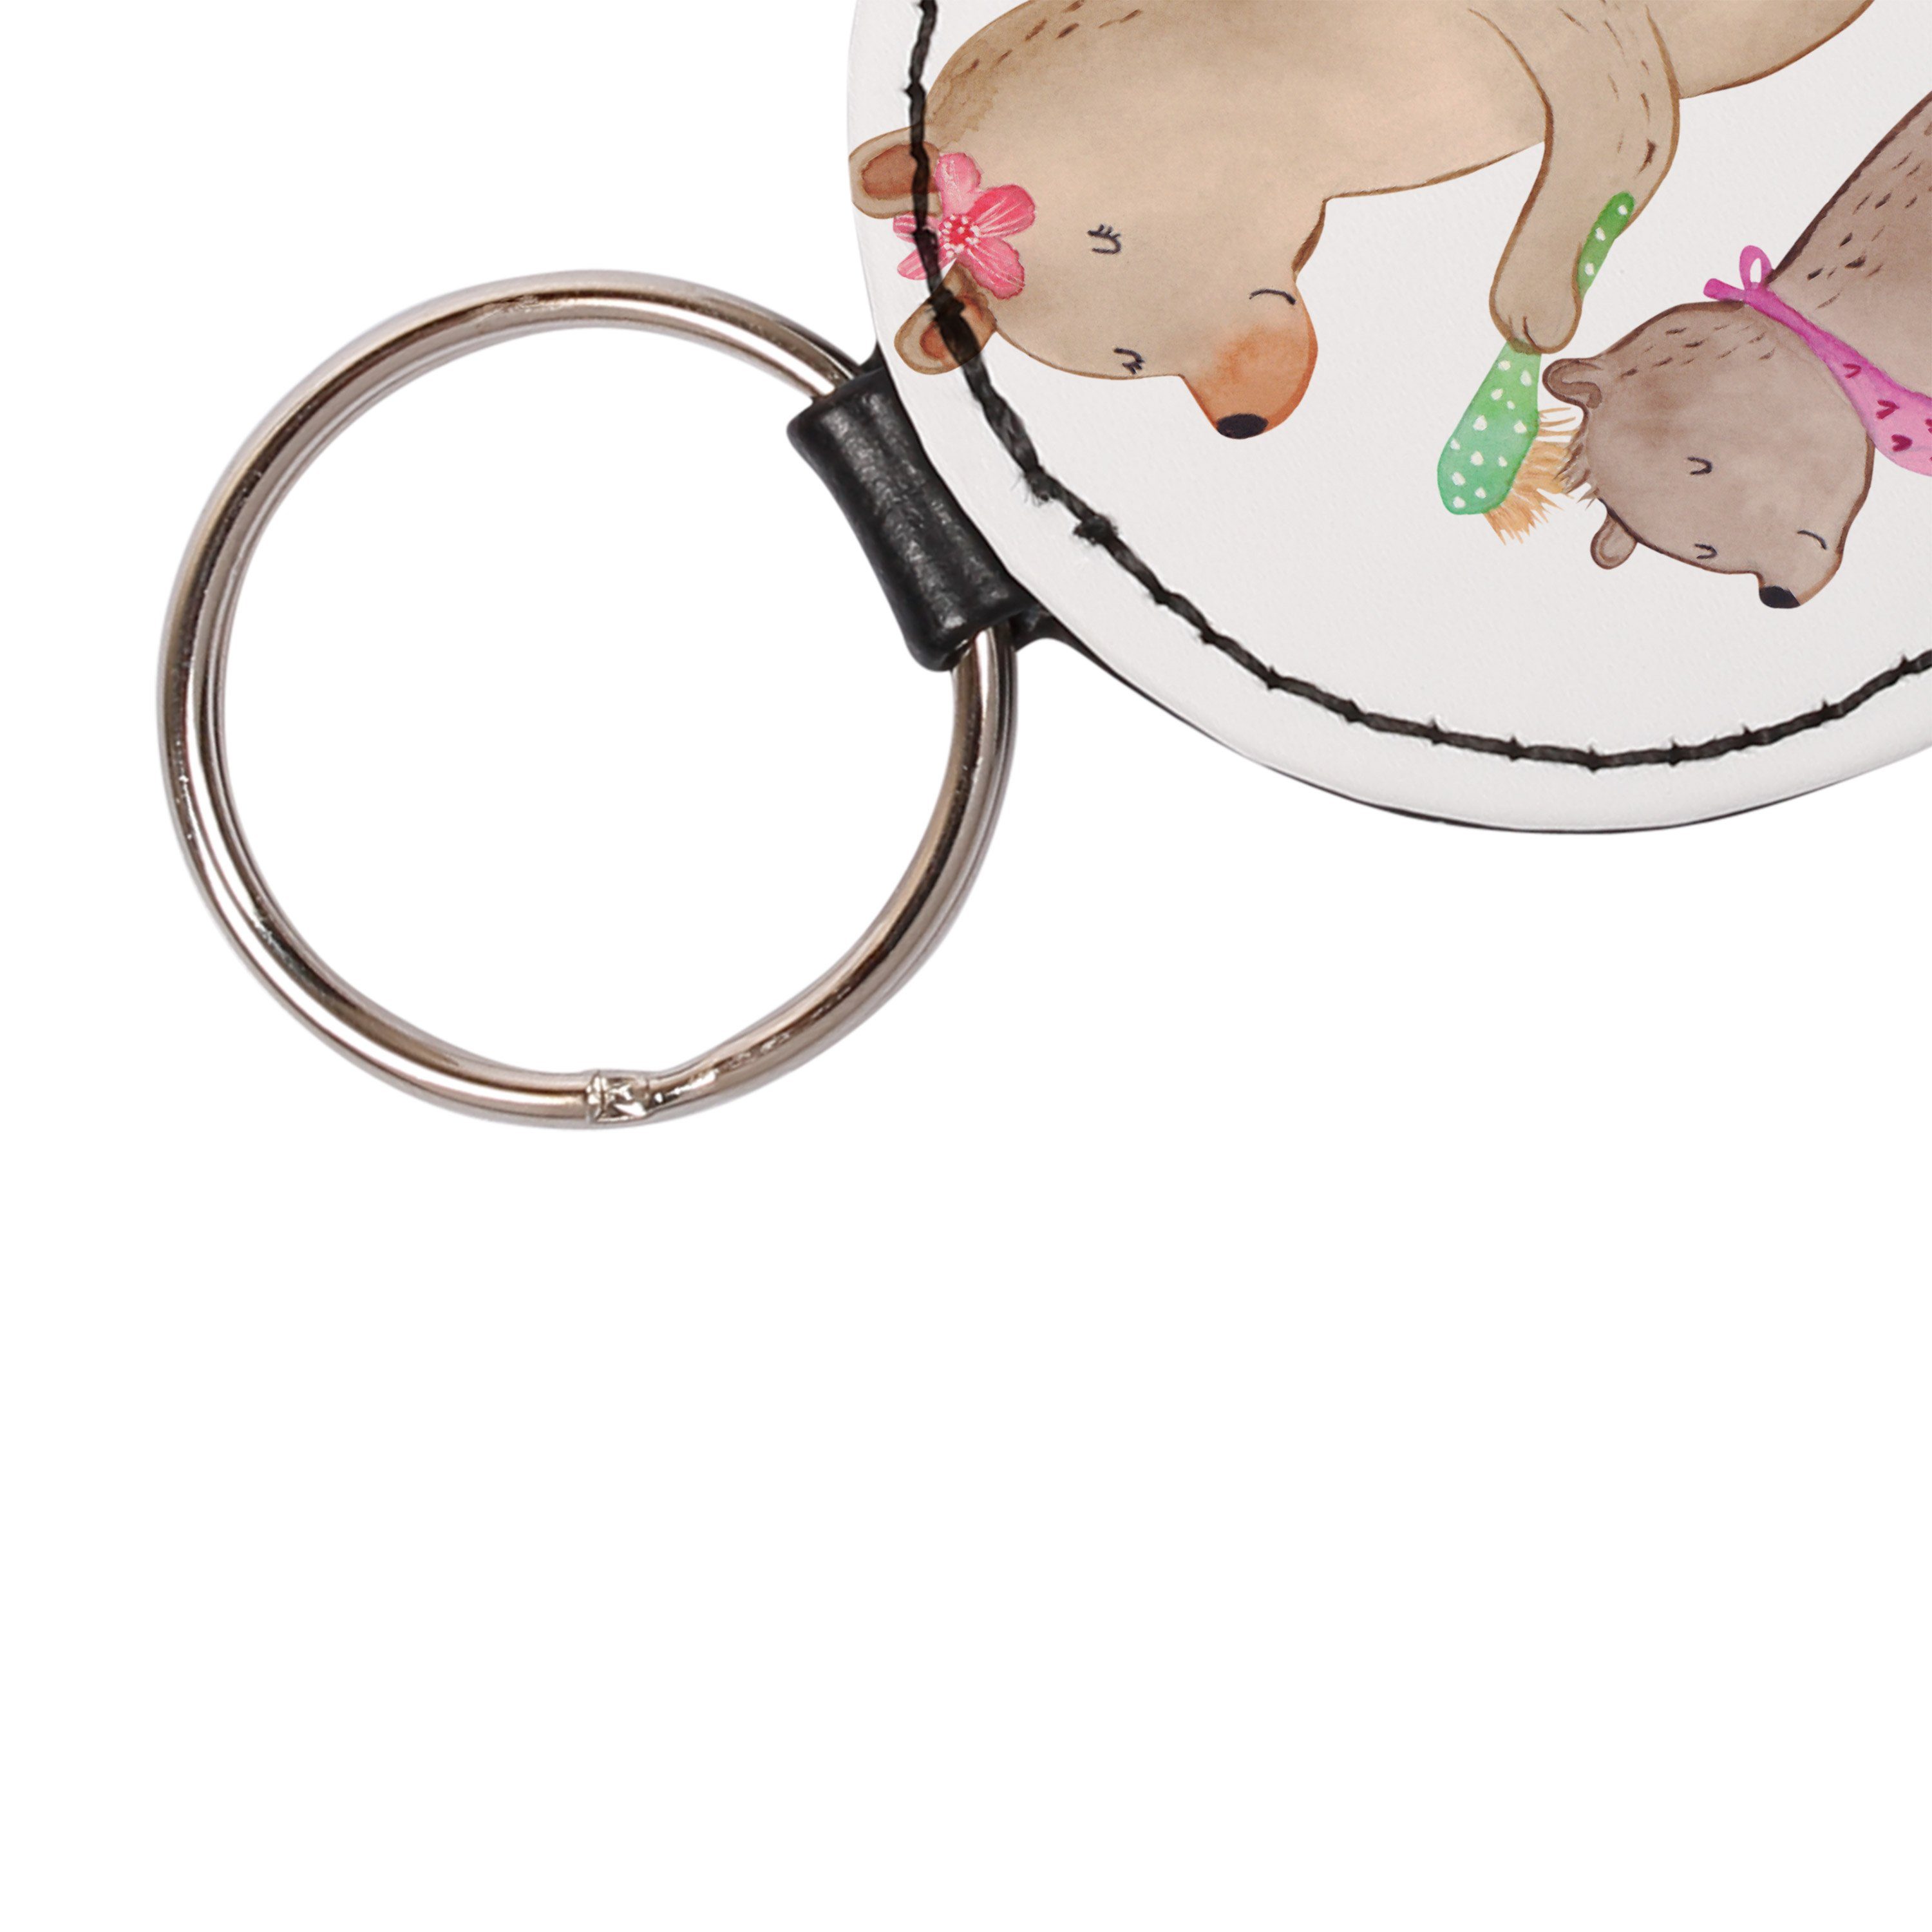 Bär Mr. - Mutterta & Weiß Schlüsselanhänger Geschenk, (1-tlg) - Schlüsselanhänger, Mrs. Panda mit Kind Anhänger,